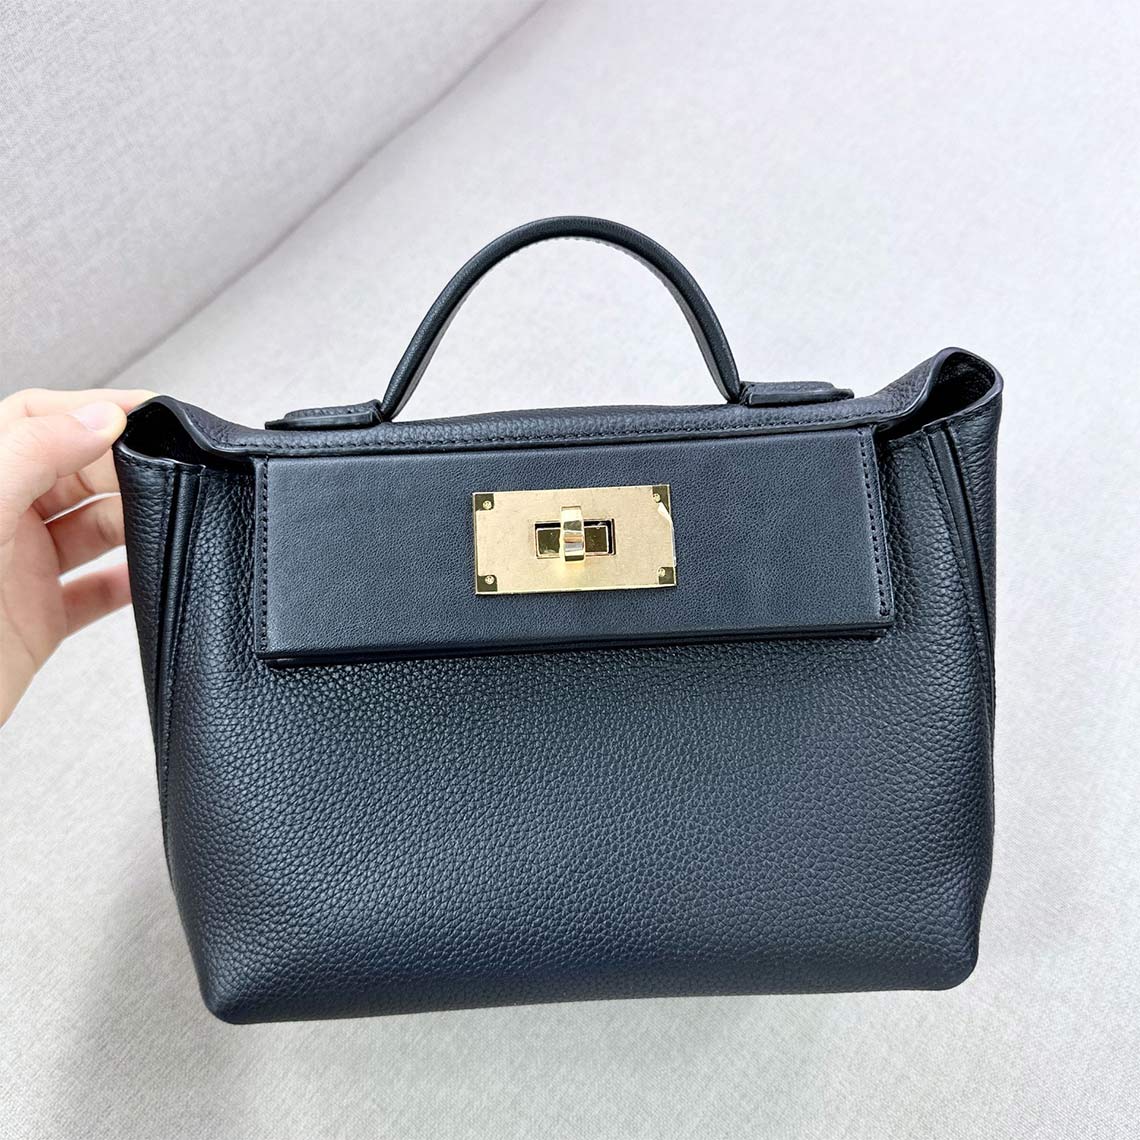 Black Leather Handbag for Women - POPSEWING®